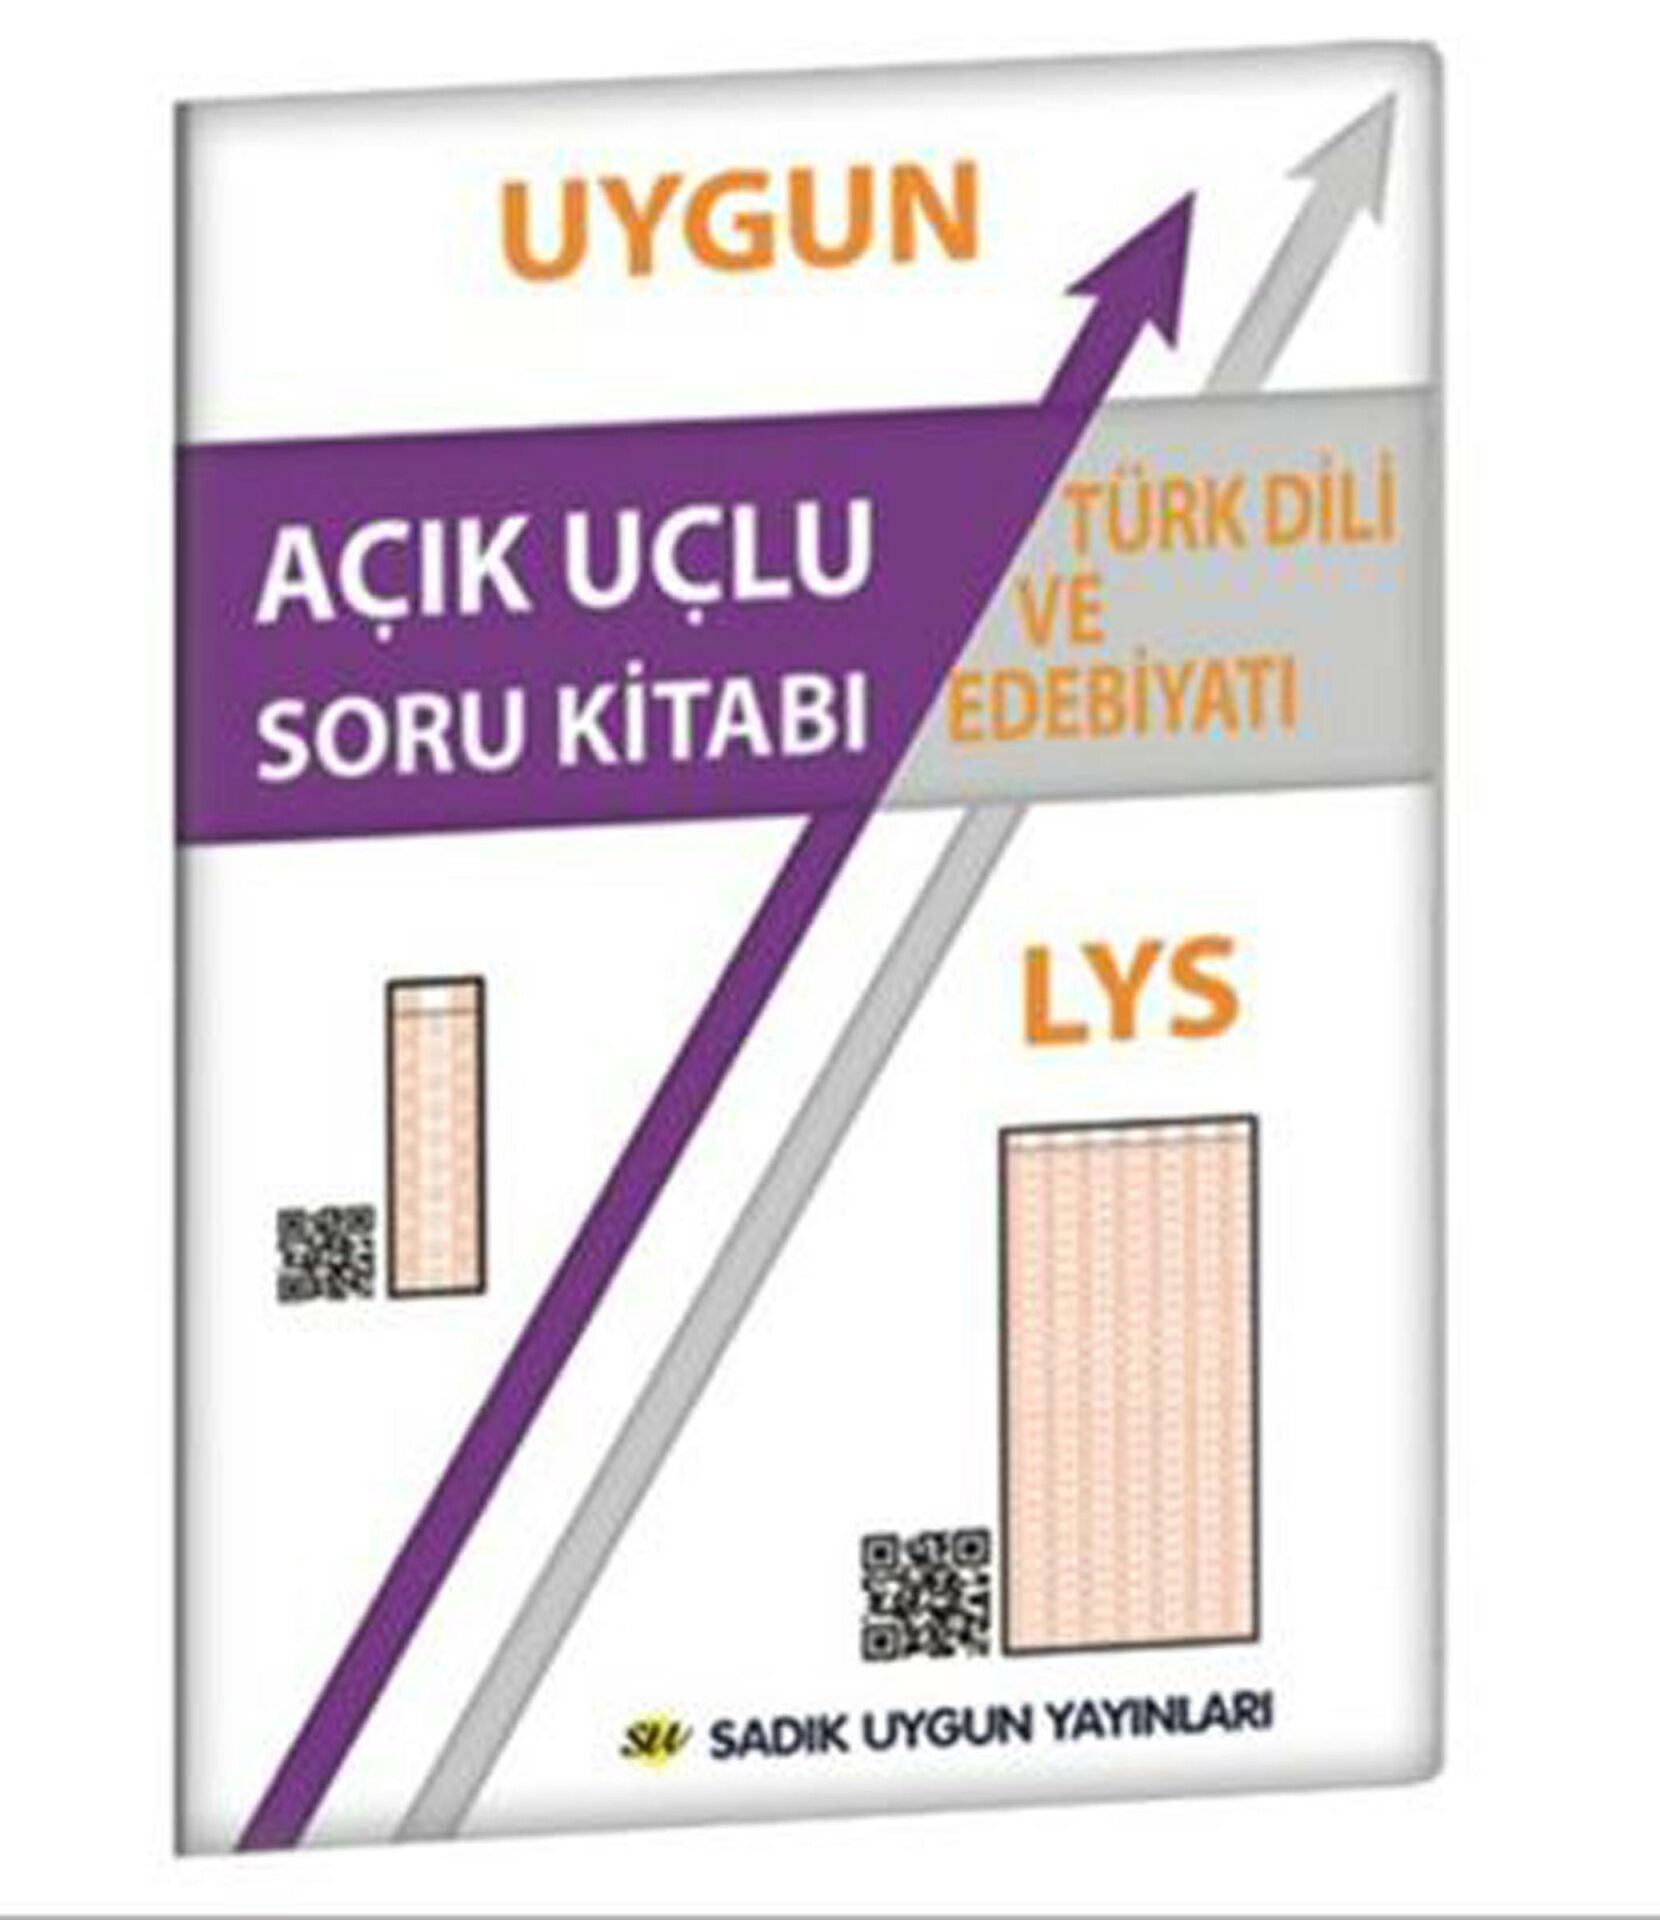 Sadık Uygun Lys Türk Dili Edebiyatı Açık Uçlu Sor Sorular